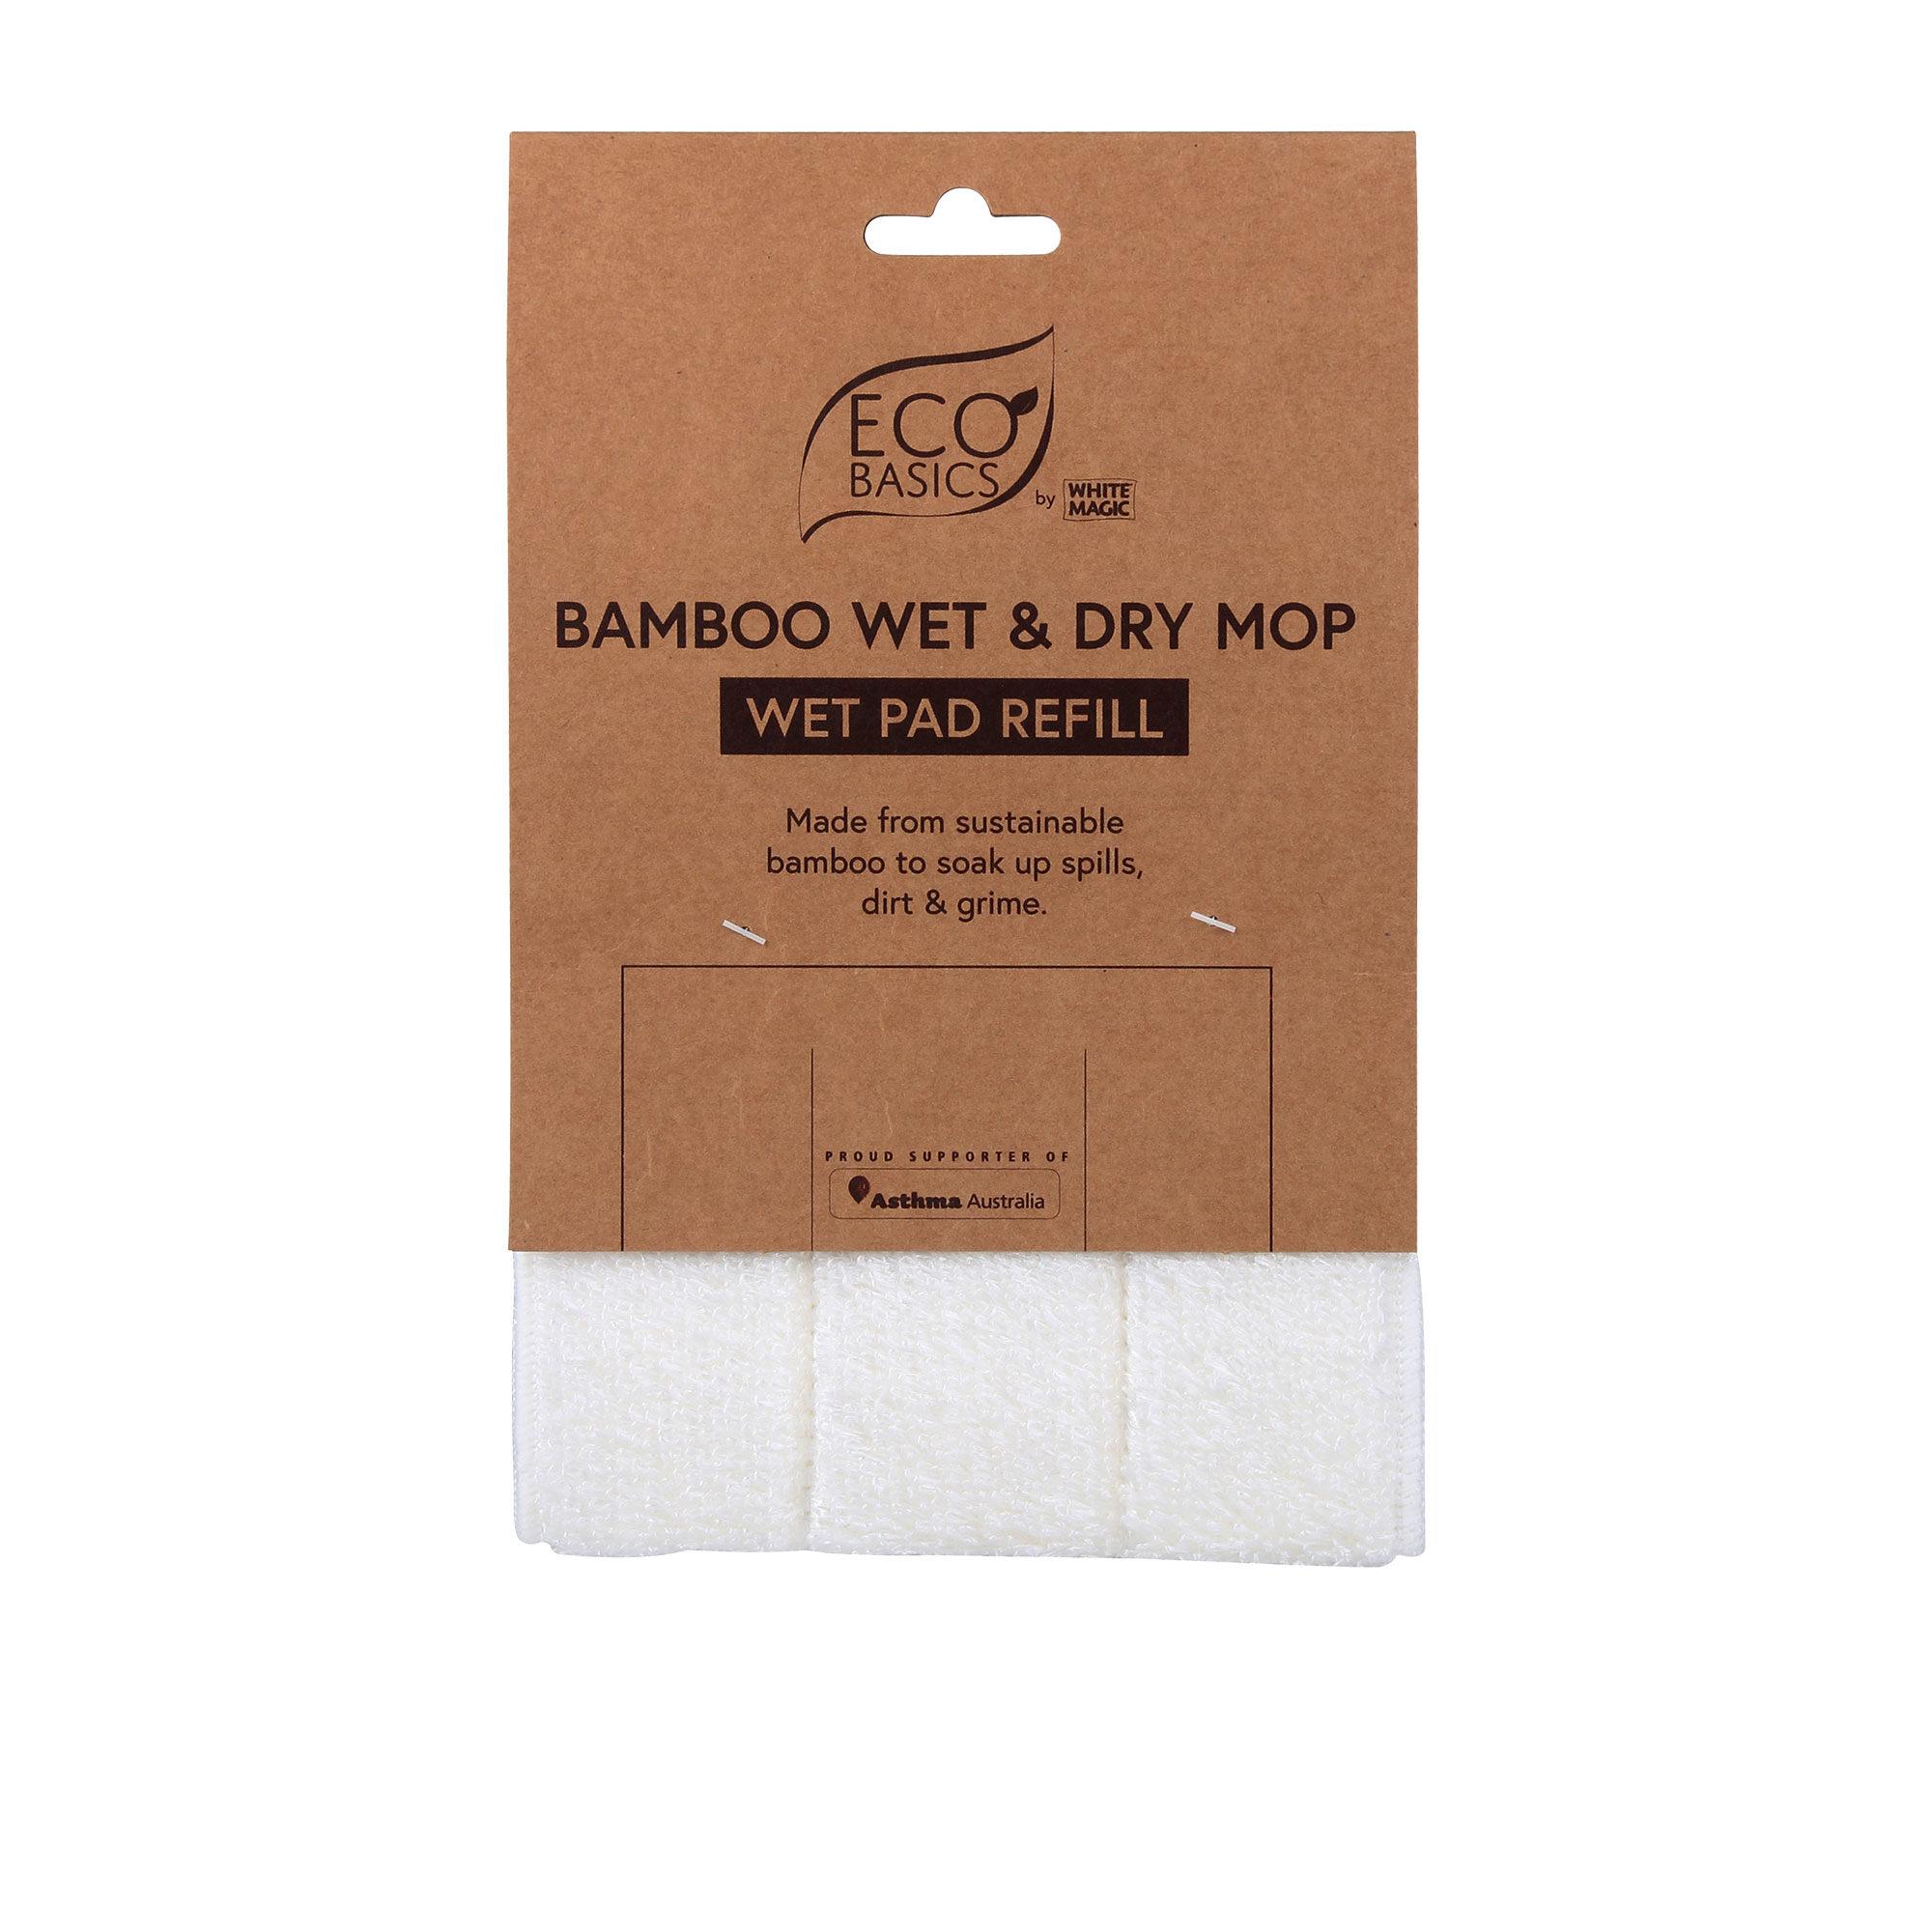 White Magic Eco Basics Bamboo Wet Pad Refill White Image 1